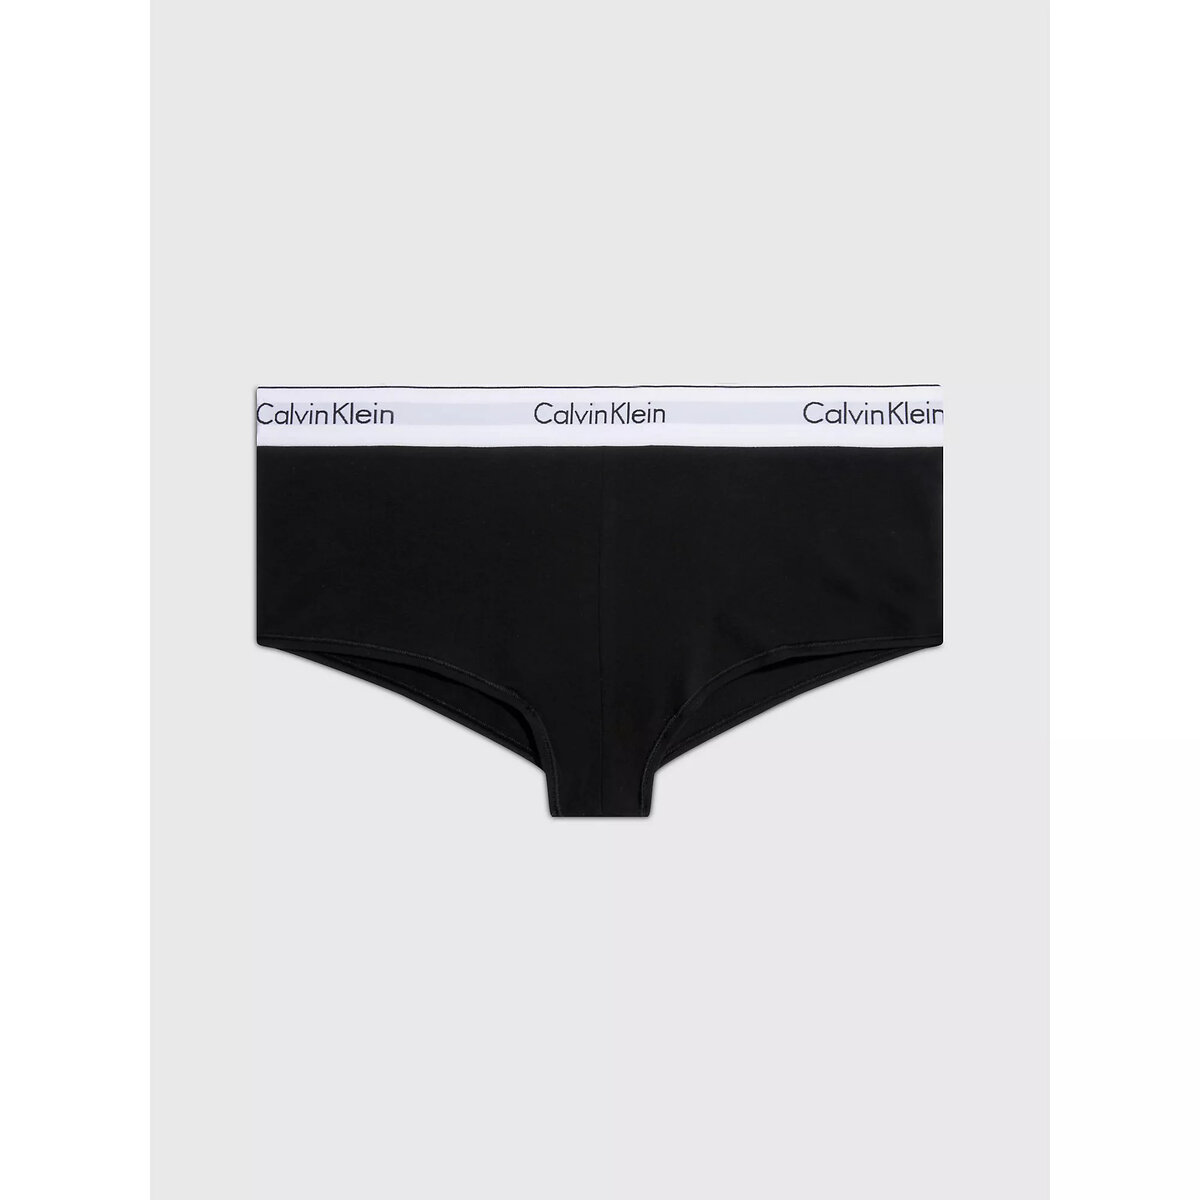 Ženské pohodlné kalhotky - Calvin Klein, M i652_0000F3788E001002